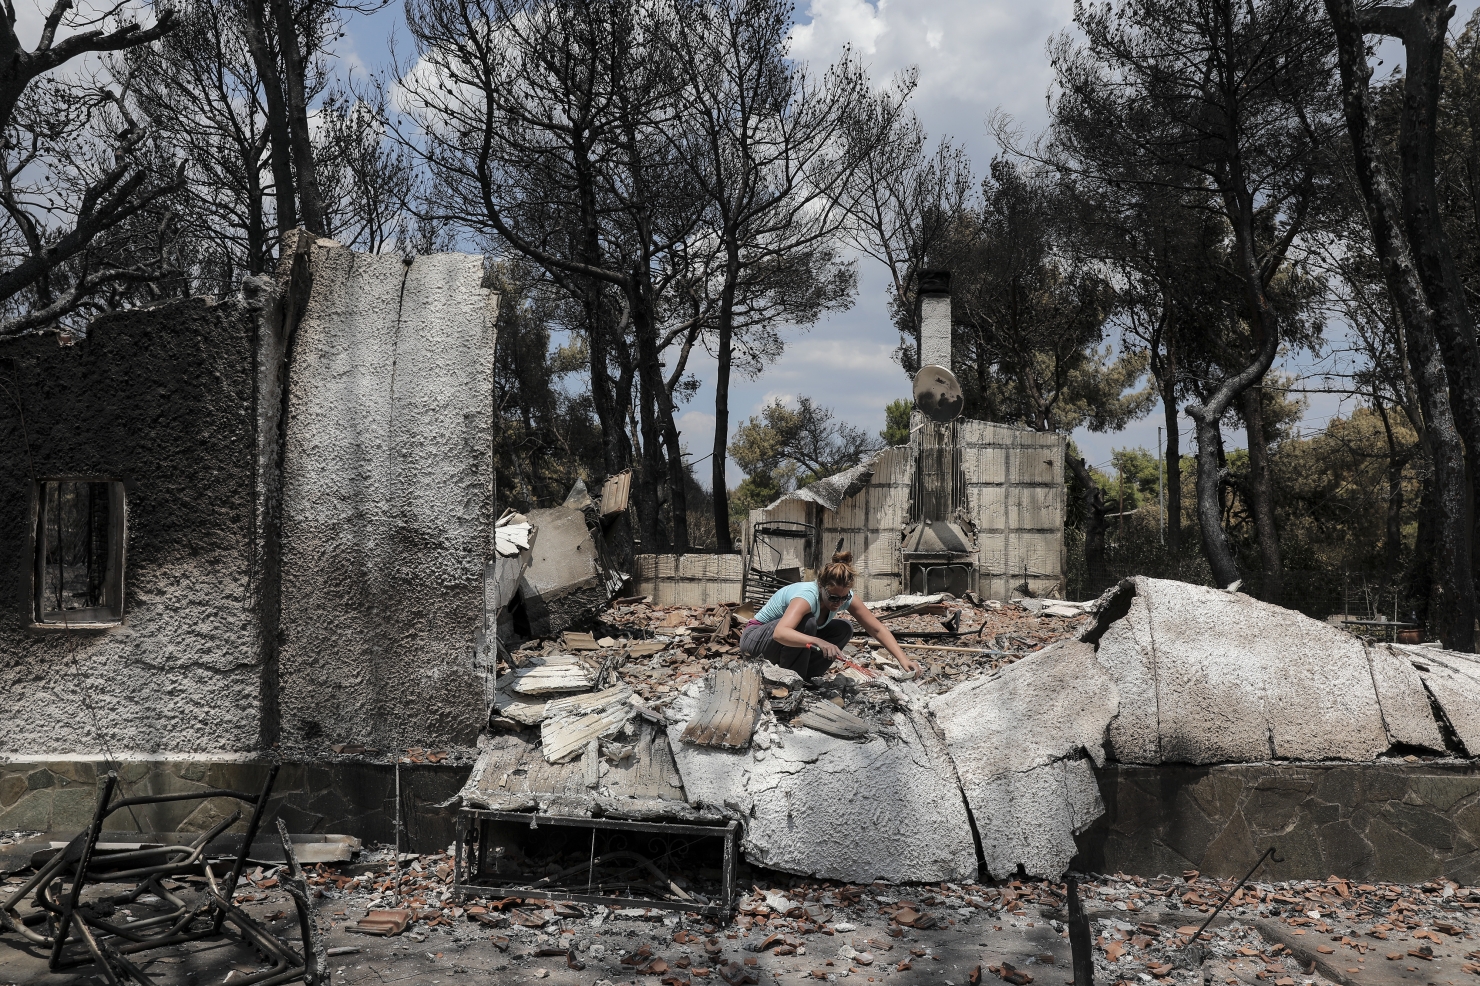 Grecia - noi imagini ale dezastrului provocat de incendiu